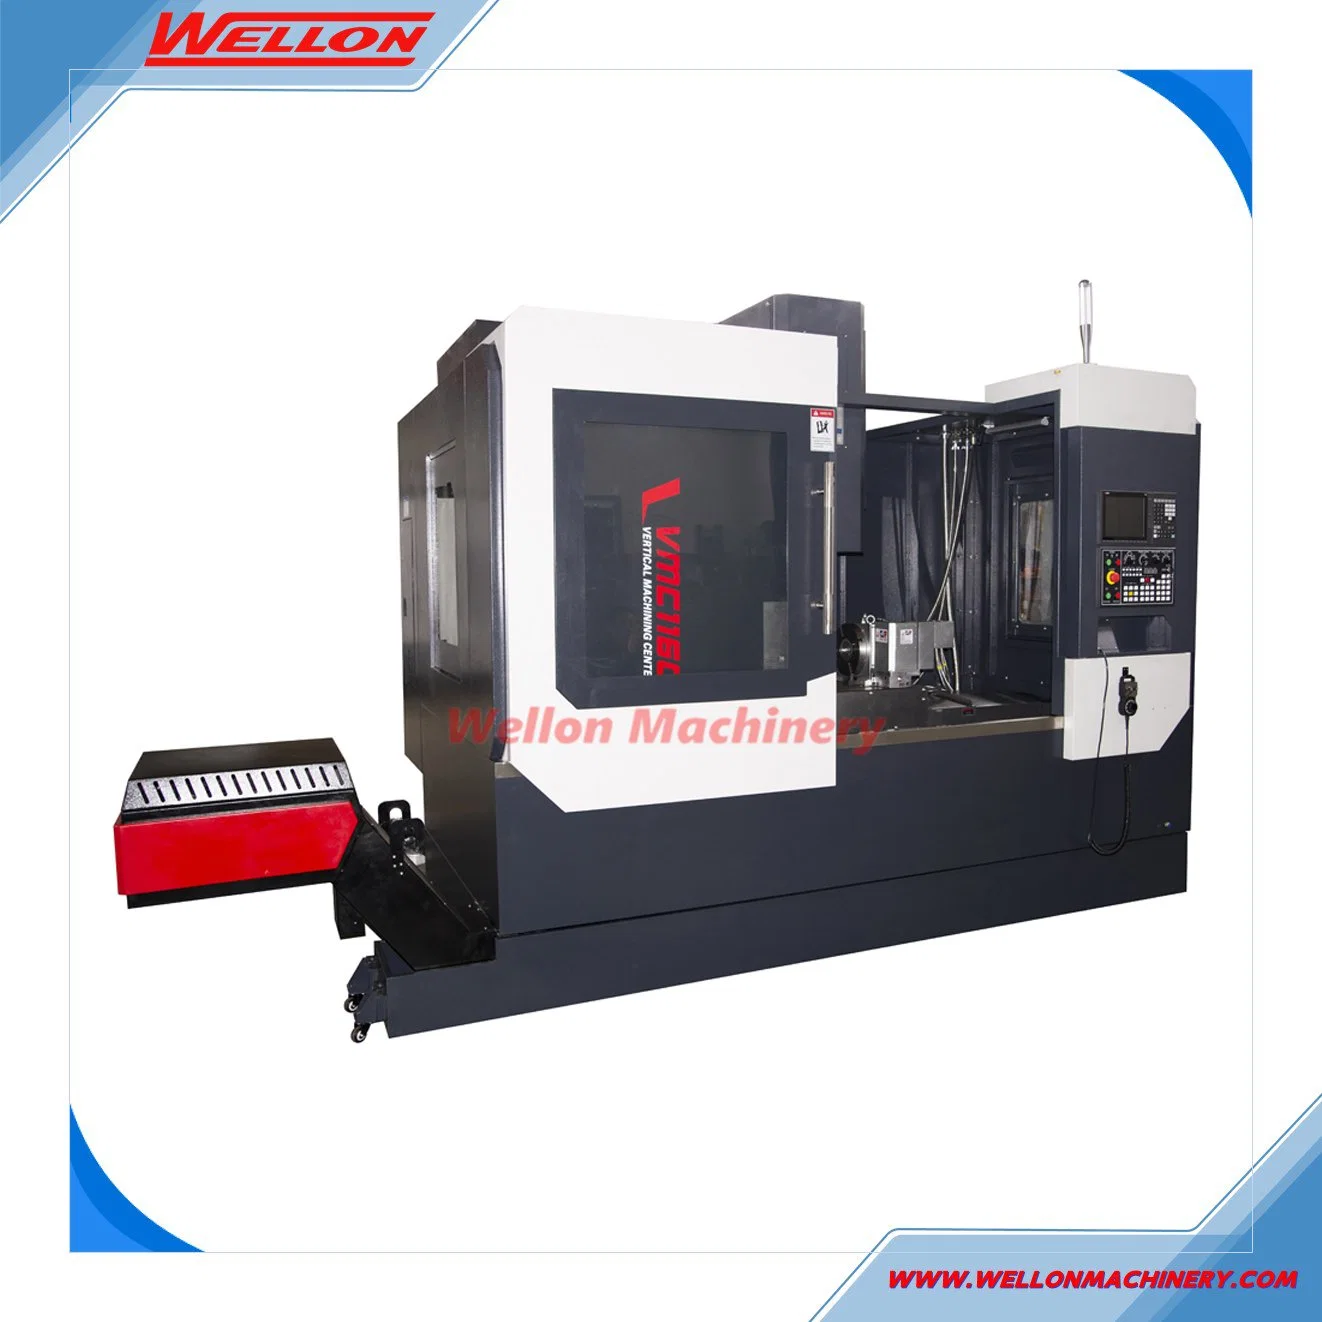 Vmc1160 Máquina de Fresagem CNC de 5 Eixos com Controlador Fanuc China Machinery